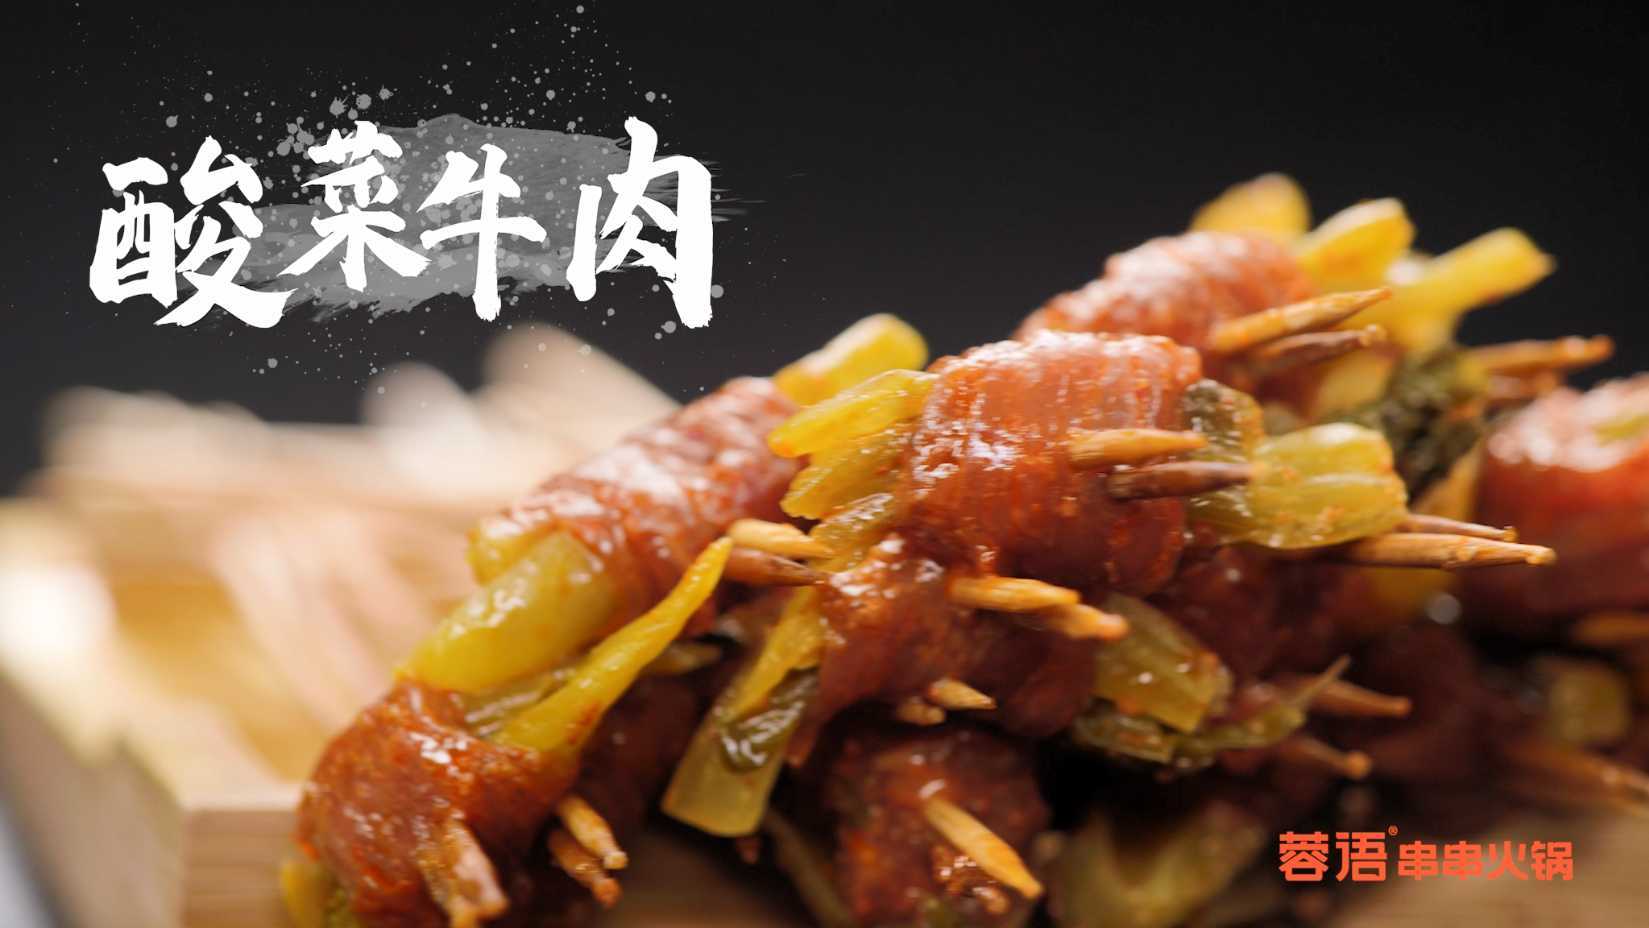 火锅店单品展示-酸菜牛肉